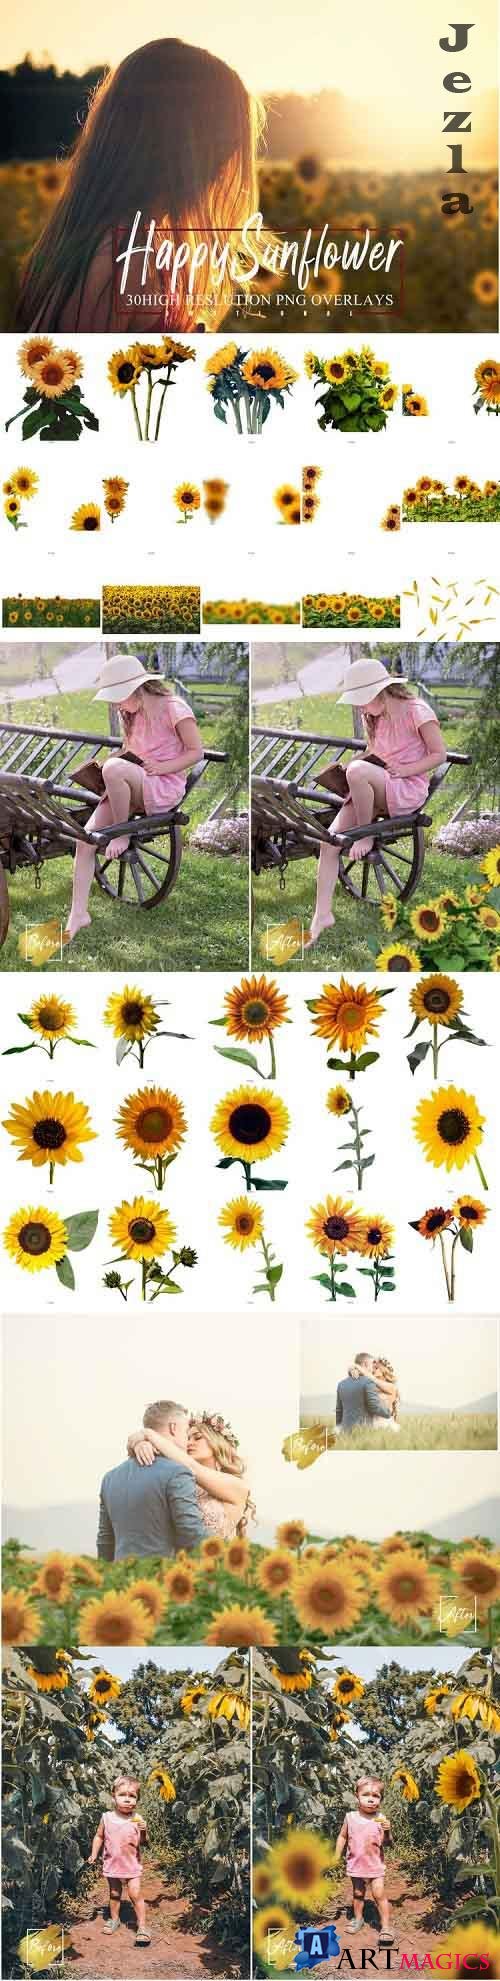 30 Happy Sunflower Photo Overlays, Flower summer spring - 1030557